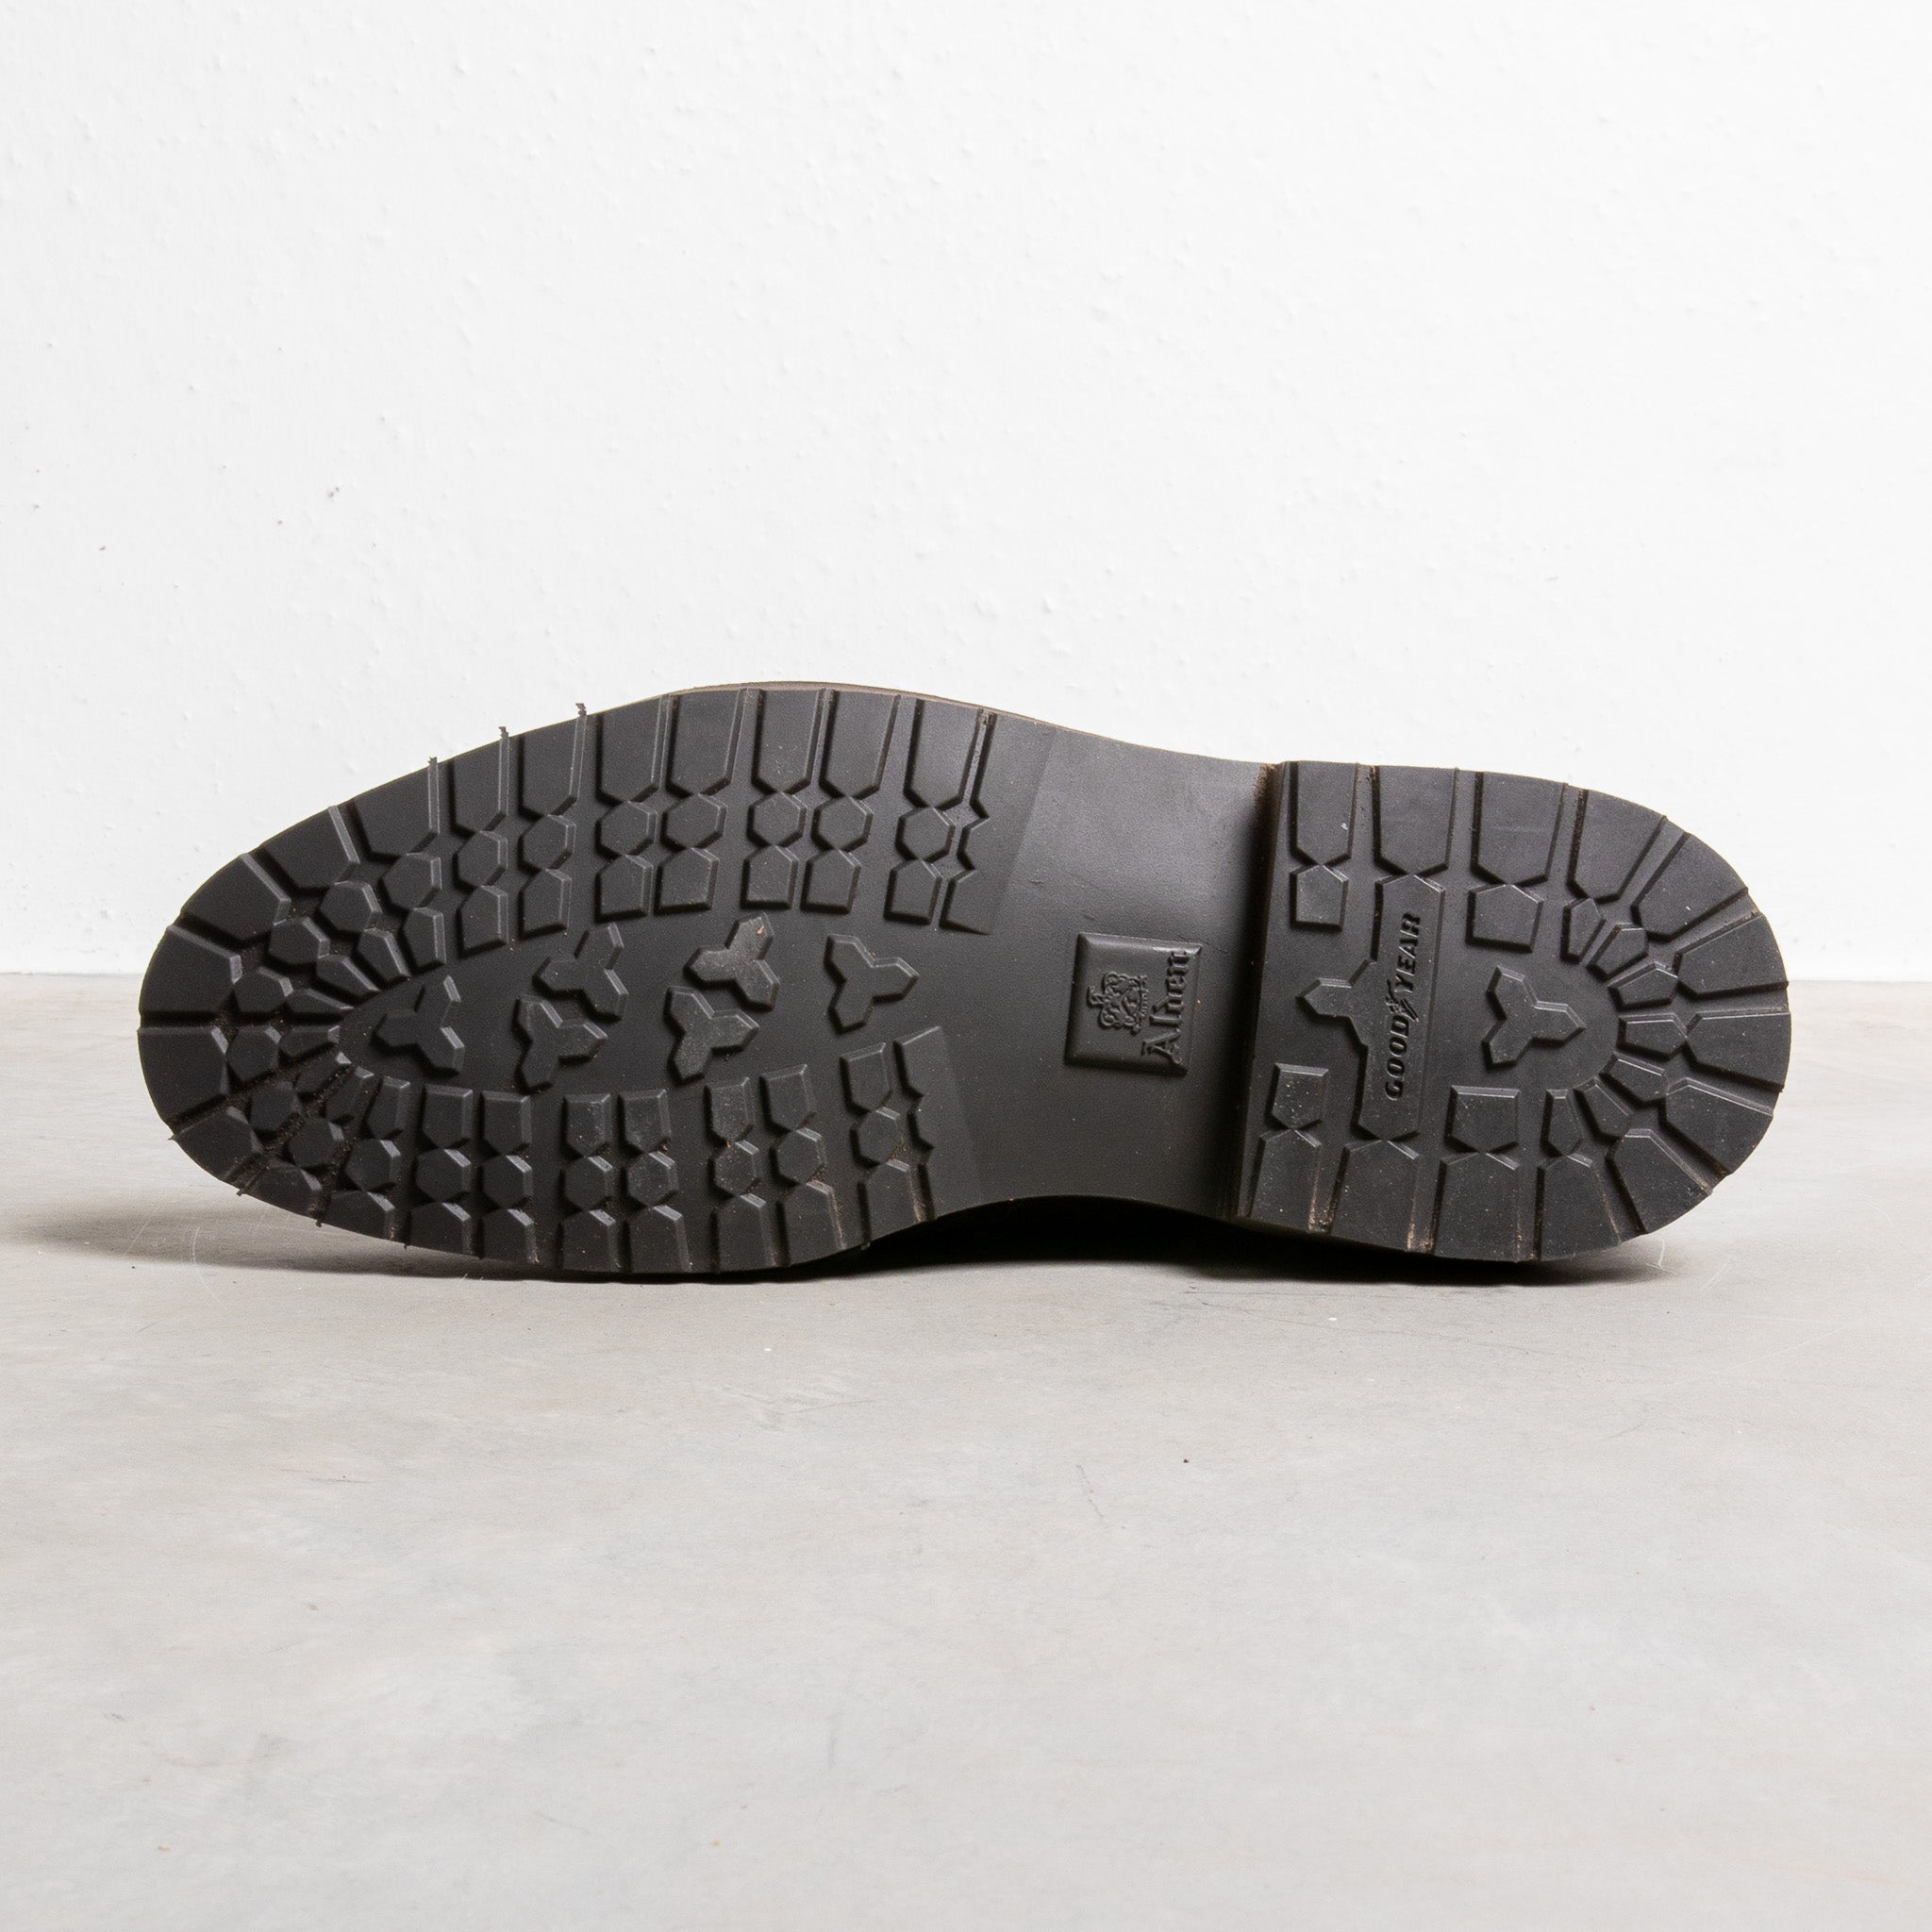 Alden dark brown suede chukka on rubber sole